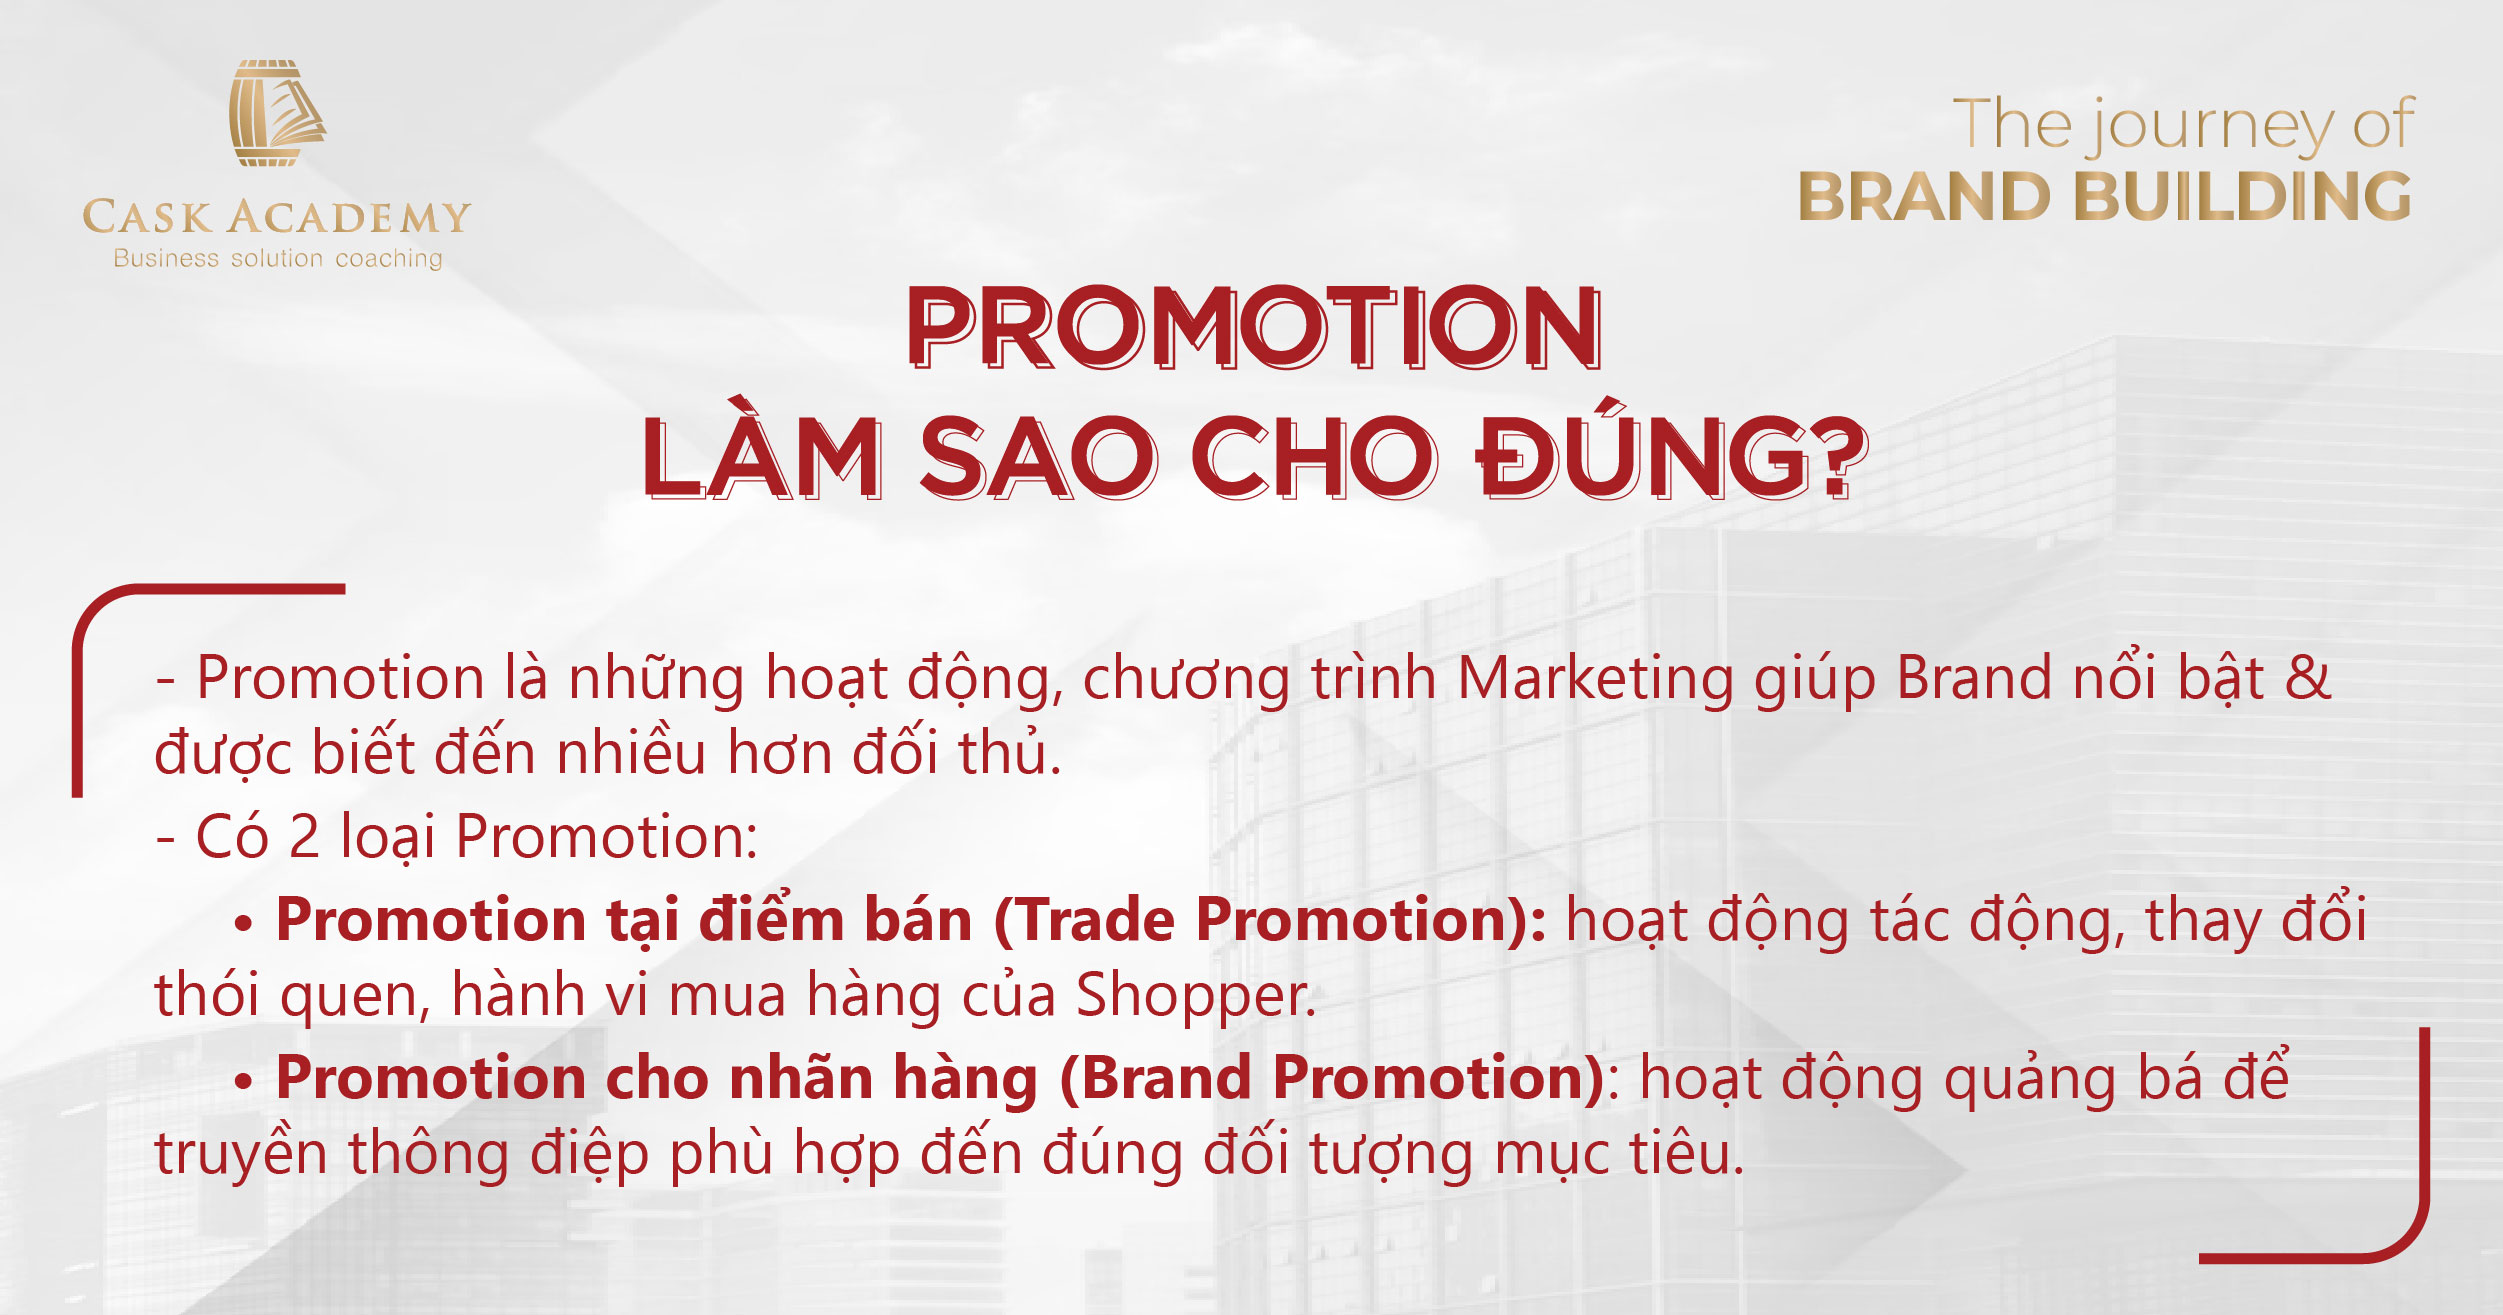 Promotion cho Brand - Làm sao cho đúng?